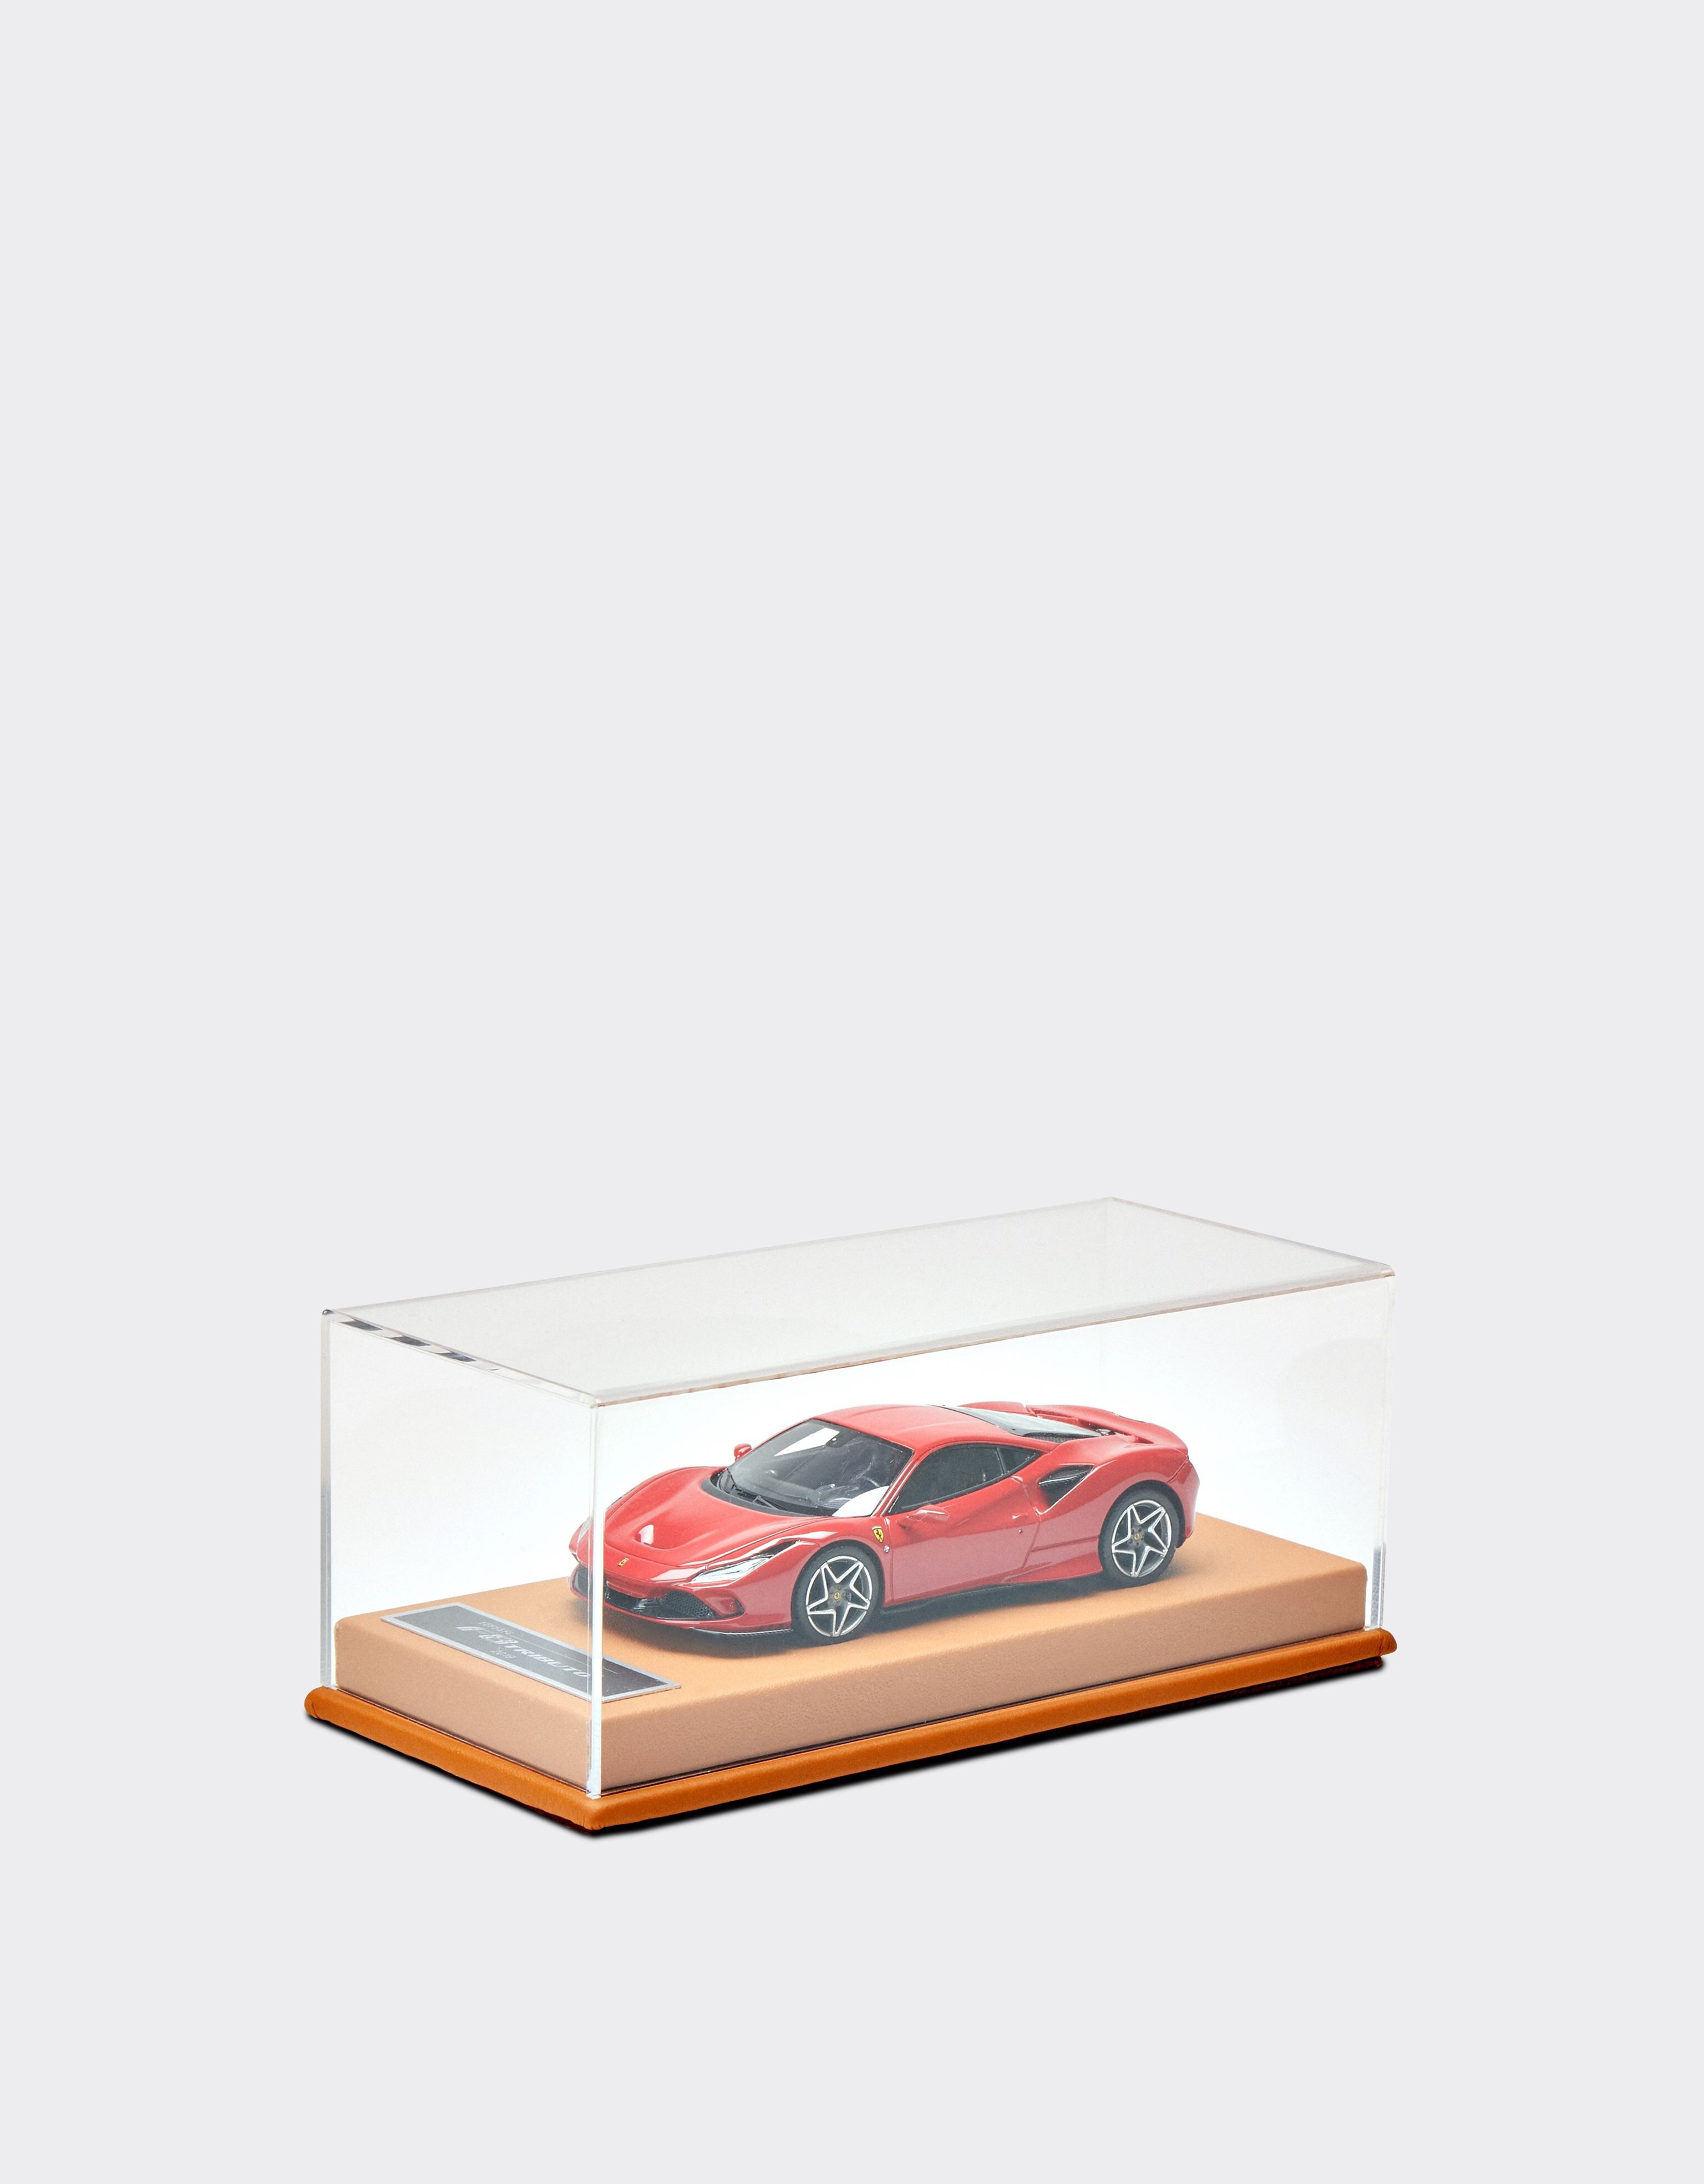 Ferrari Ferrari F8 Tributo 1:43スケール モデルカー レッド 47297f